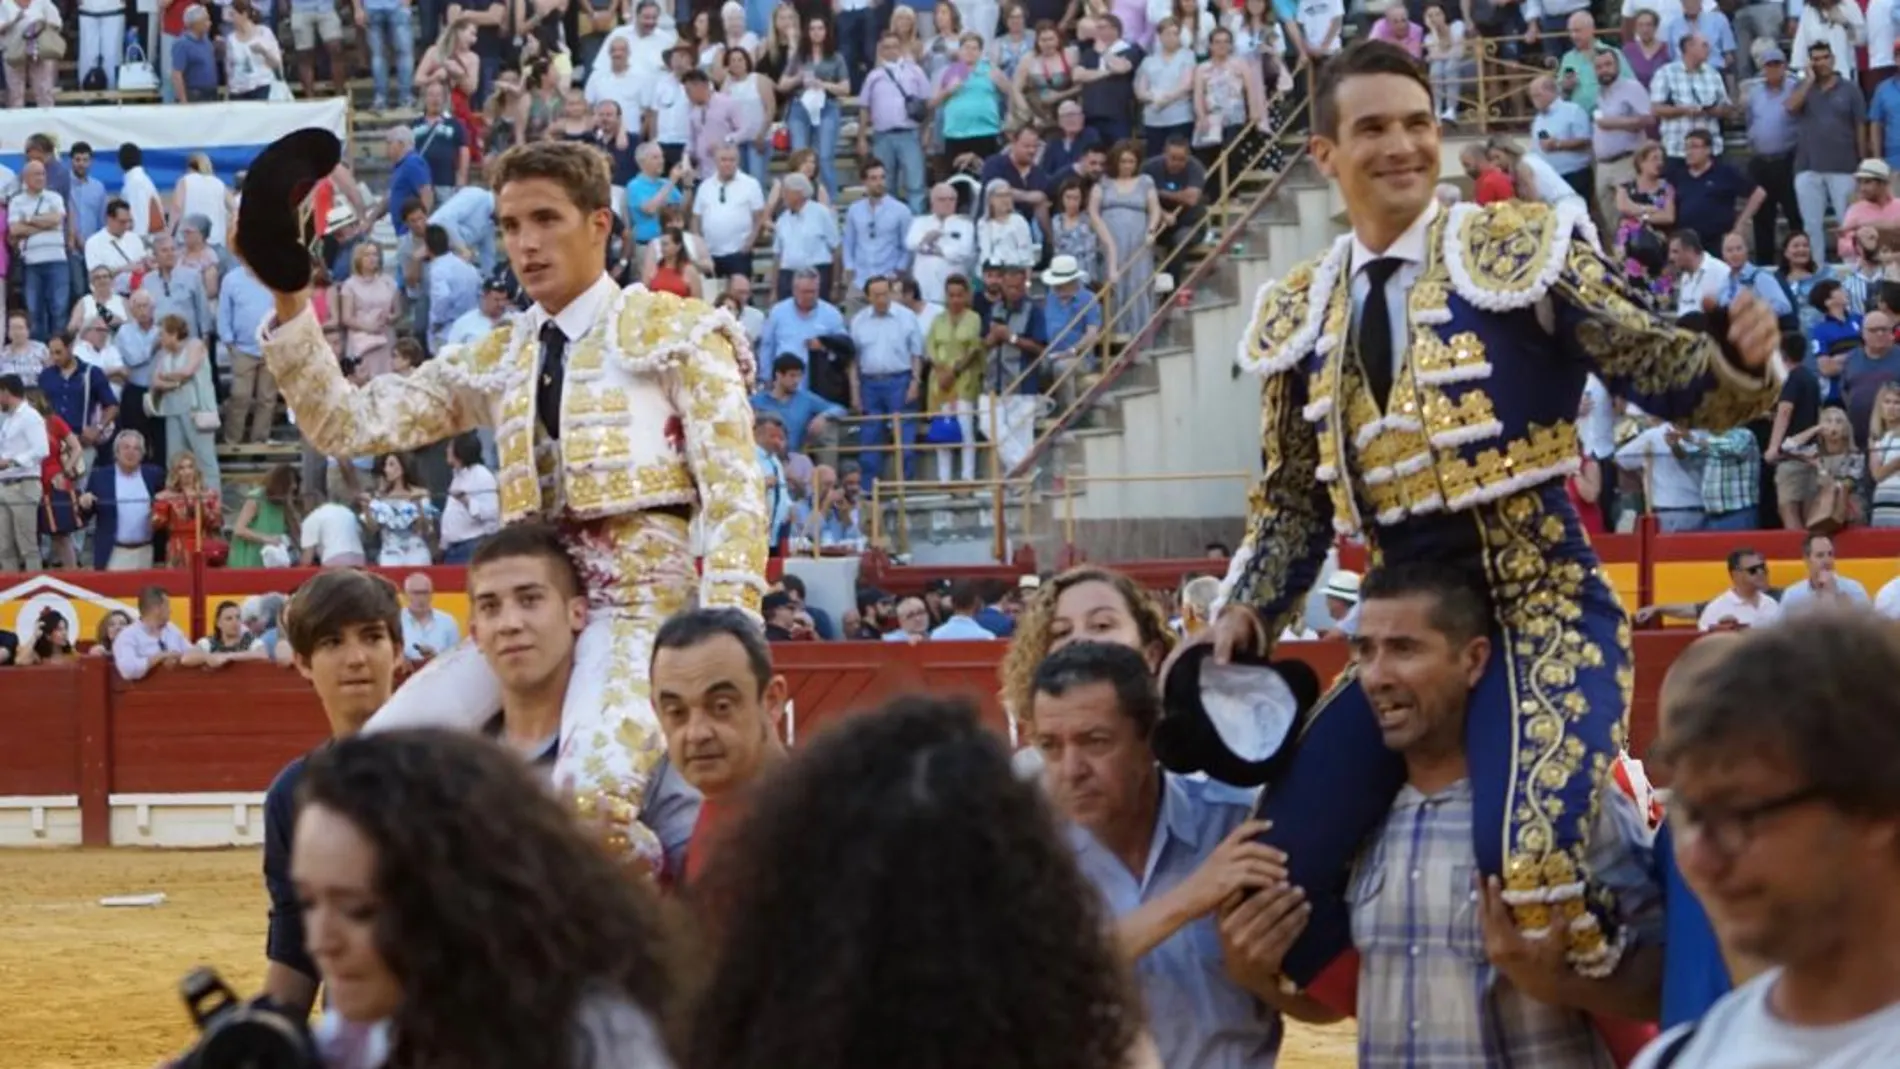 José María Manzanares y Diego Carretero saliendo a hombros de la Plaza de Toros de Alicante / David García